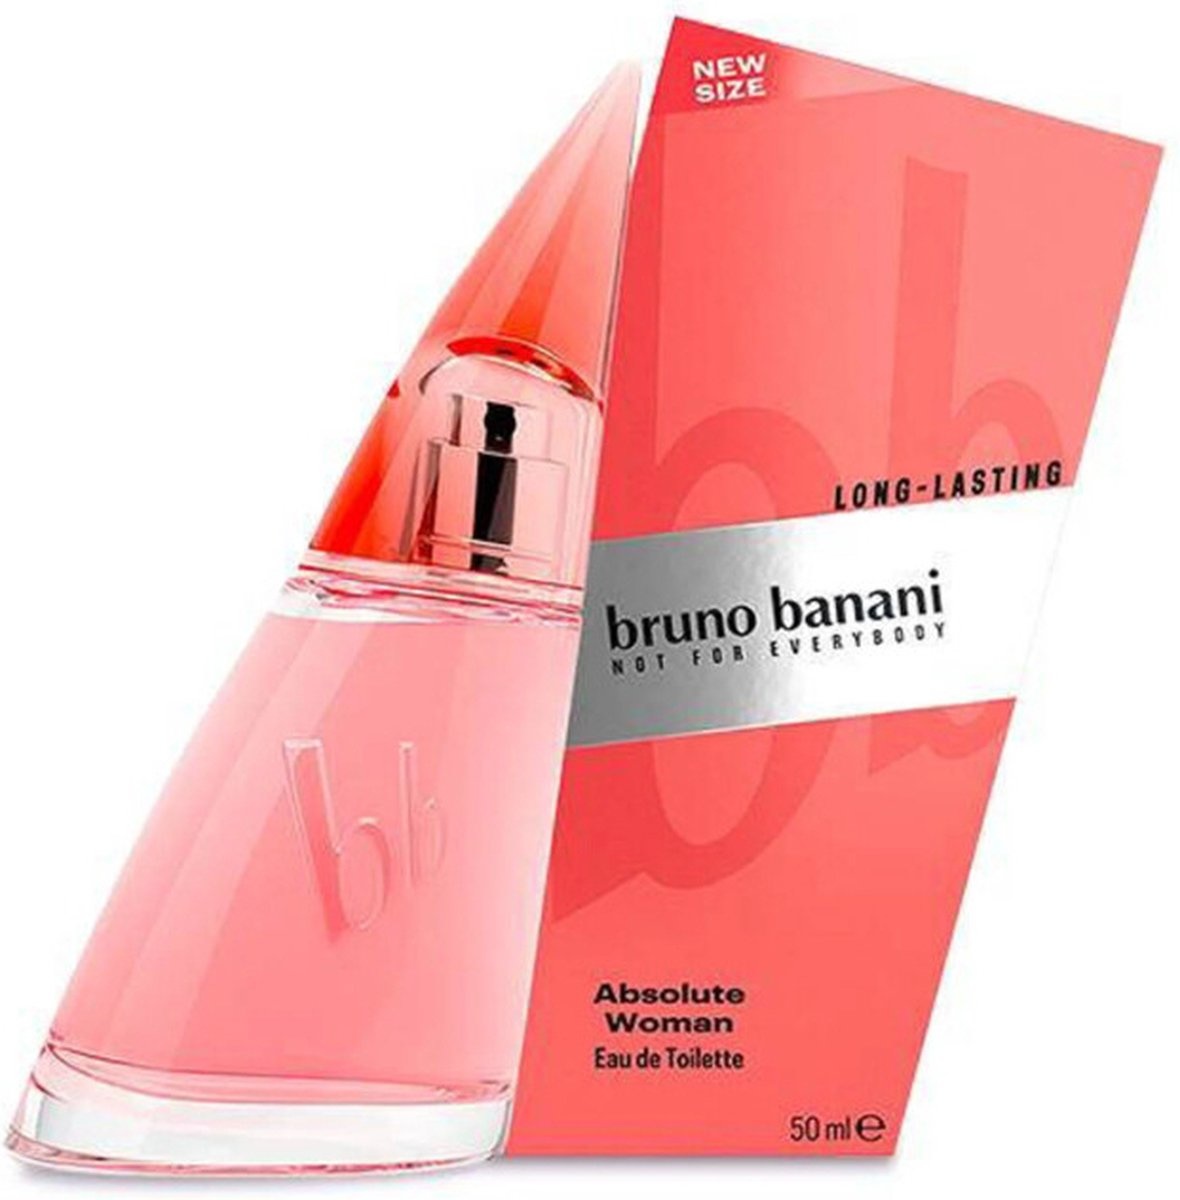 Bruno Banani Absolute Woman Eau de Toilette Spray - 50 ml - Verpakking beschadigd